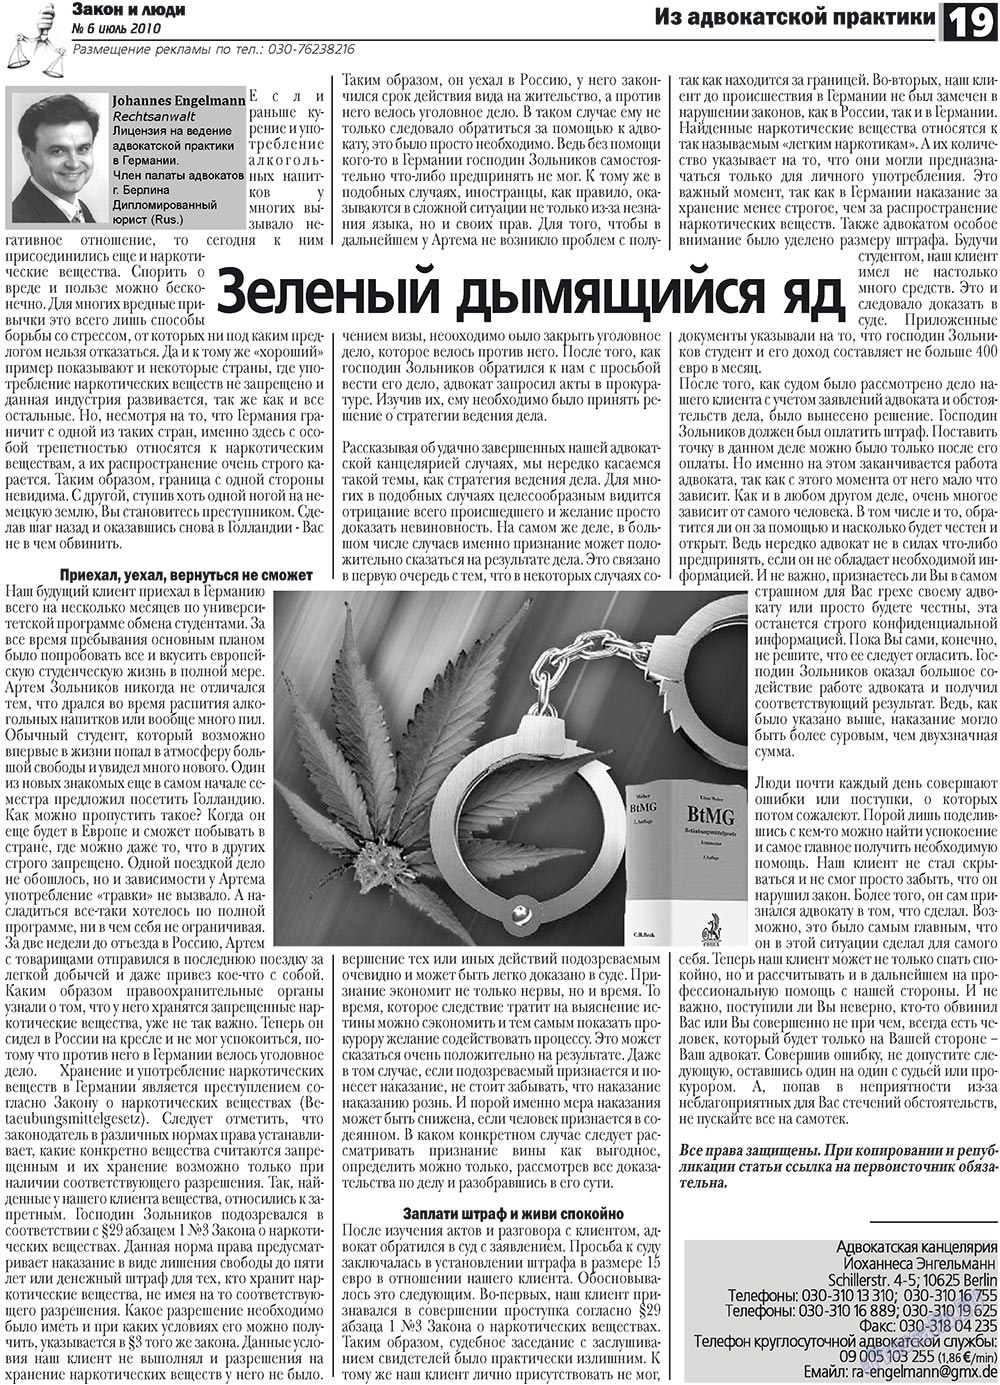 Закон и люди, газета. 2010 №6 стр.19